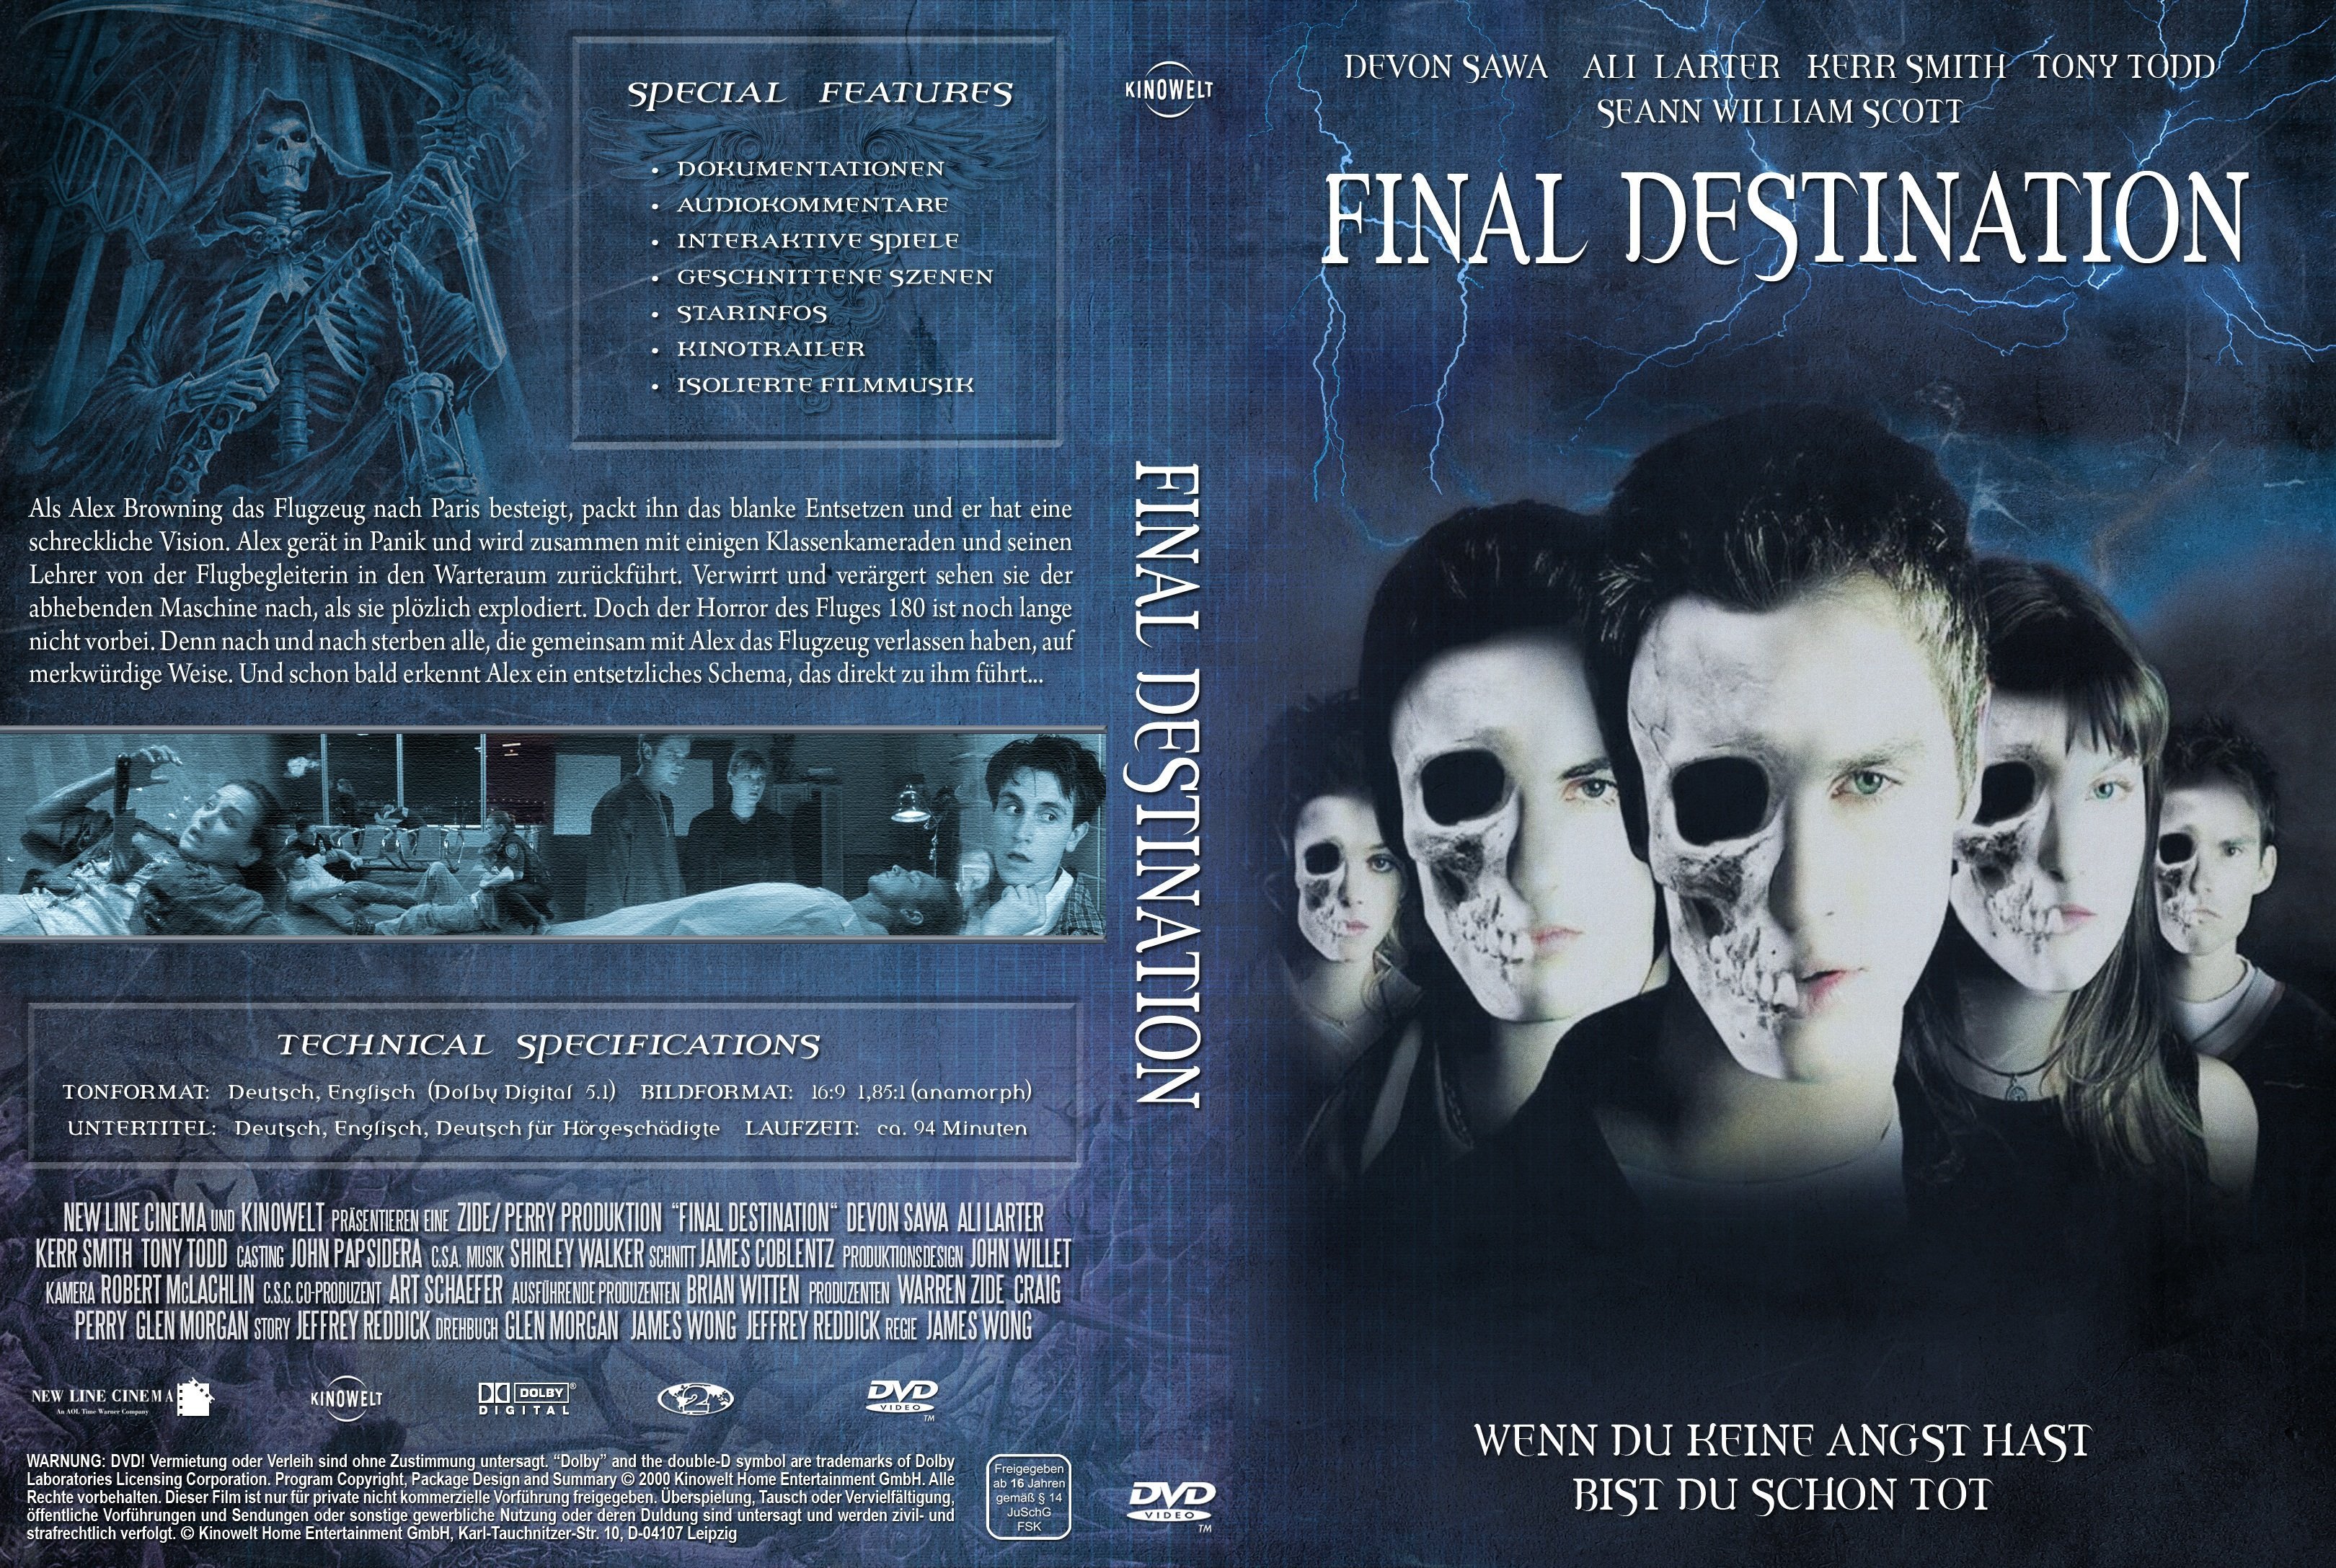 Final destination 1 dvd torrent paagan tamil movie download utorrent